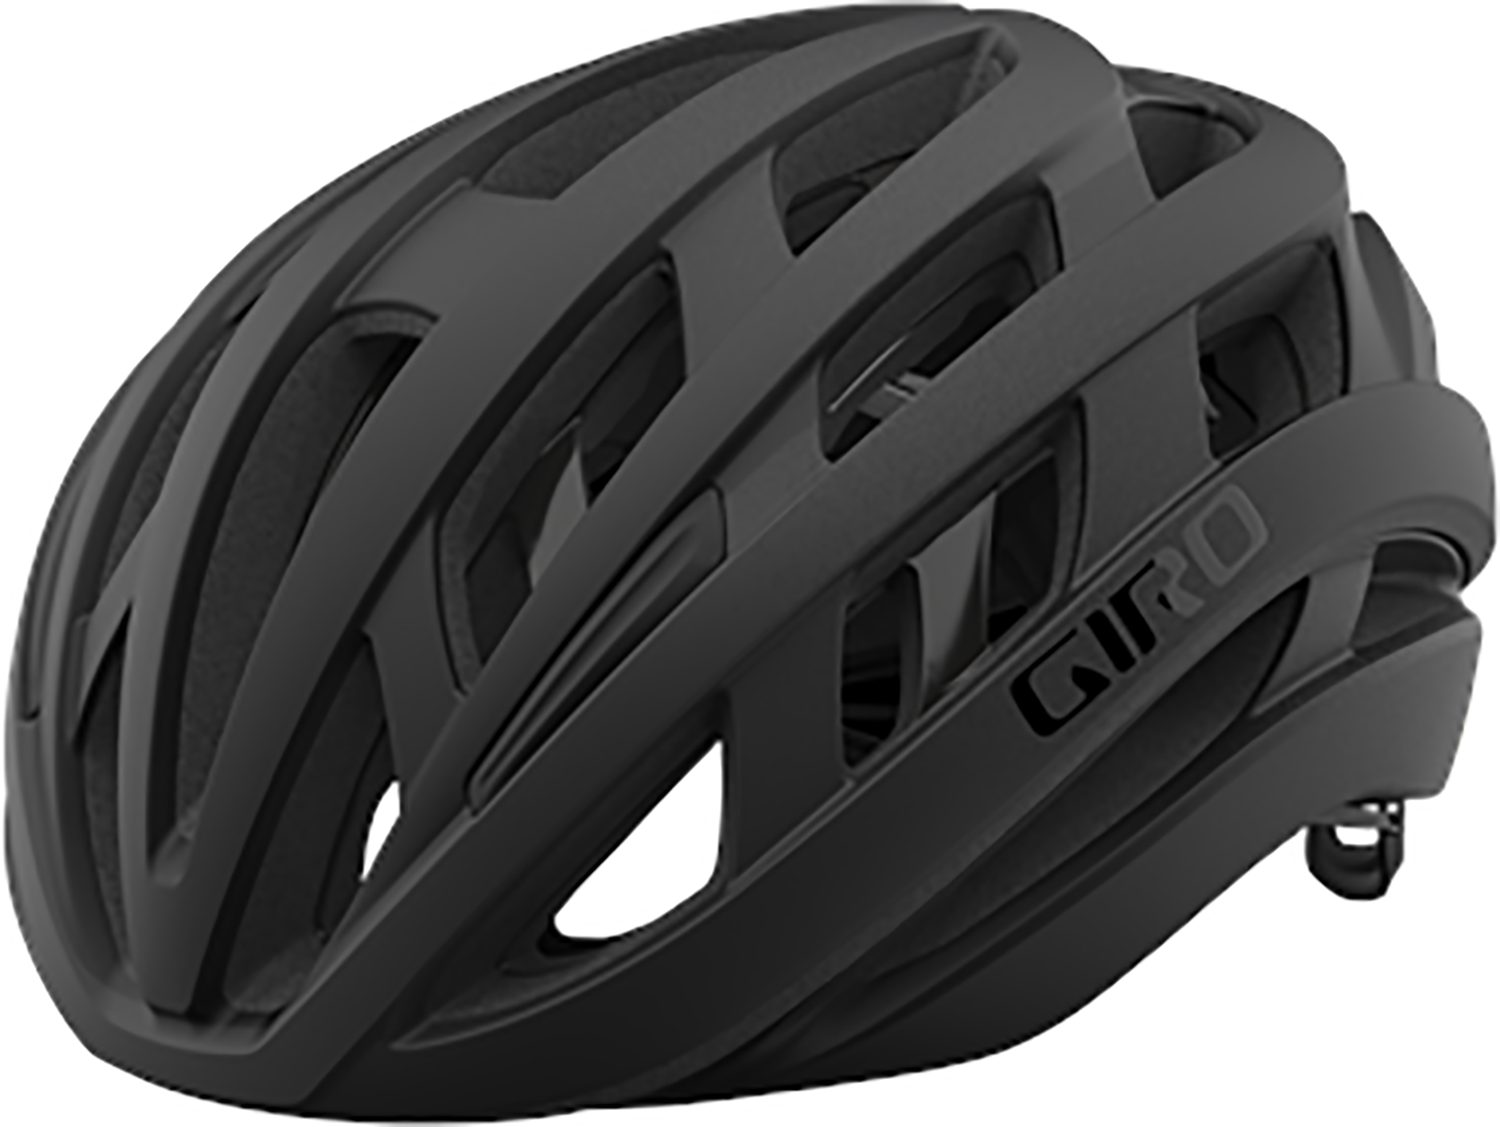 Se Giro Helios Spherical Mips - Cykelhjelm Road - Str. 59-63 cm - Sort fade hos Cykelexperten.dk